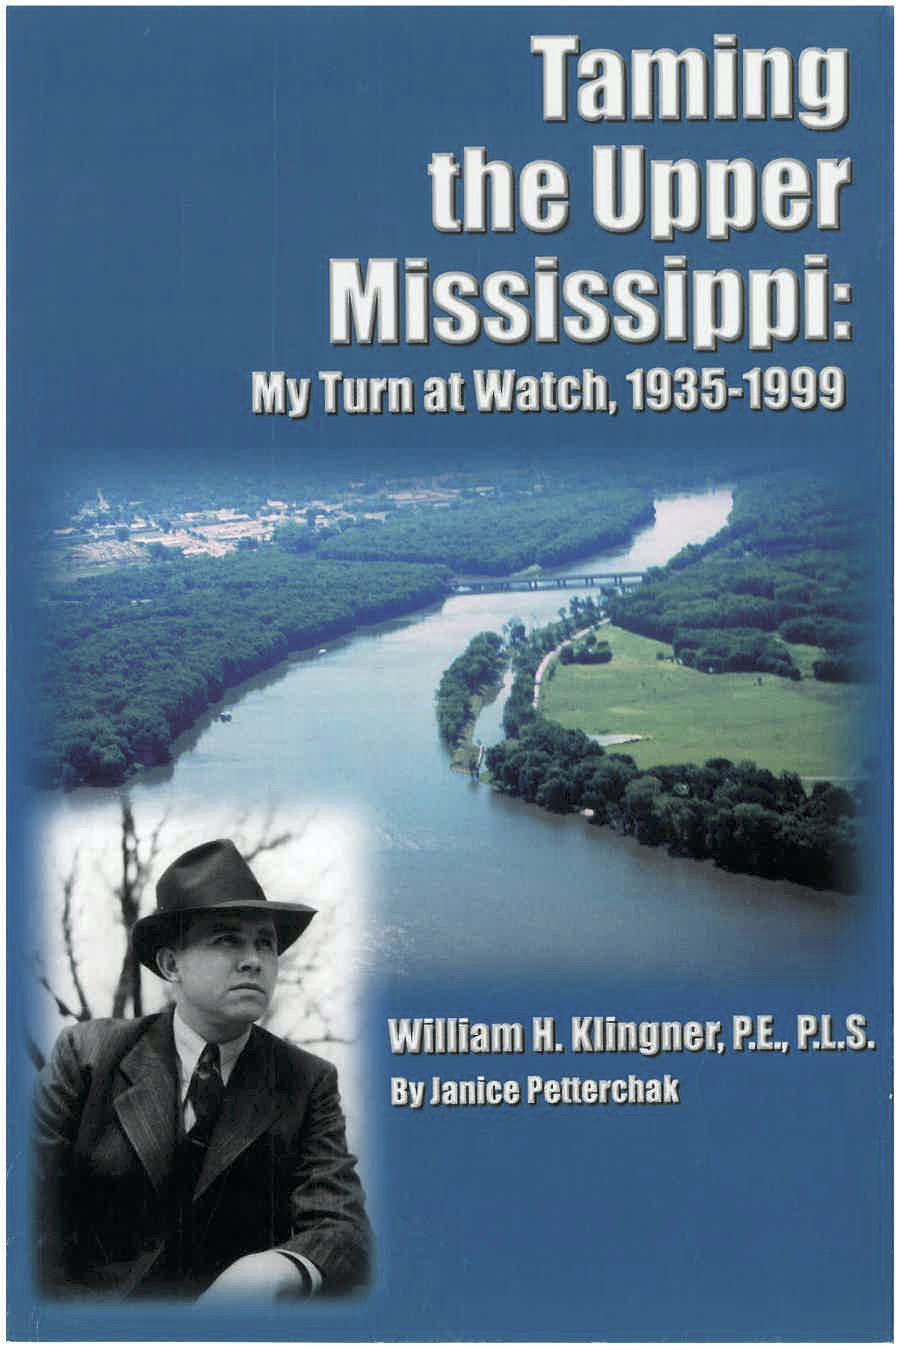 Klingner book front cover